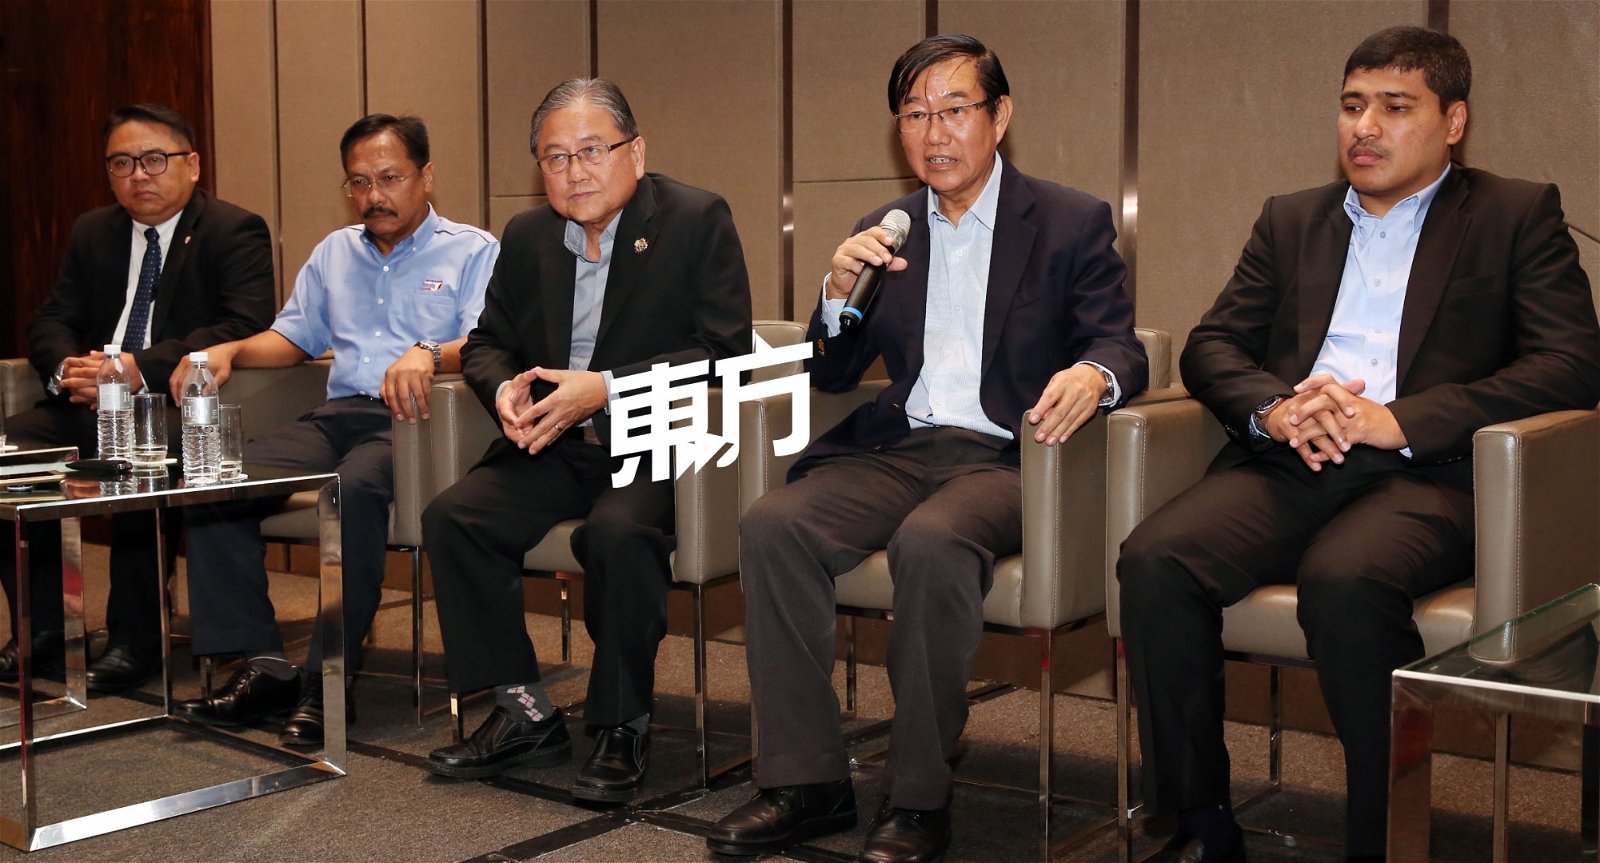 沈天良（左3起）与符绩理在座谈会后，向媒体披露举办座谈会的目的，以及建筑业所面对的问题。 （摄影：刘维杰）